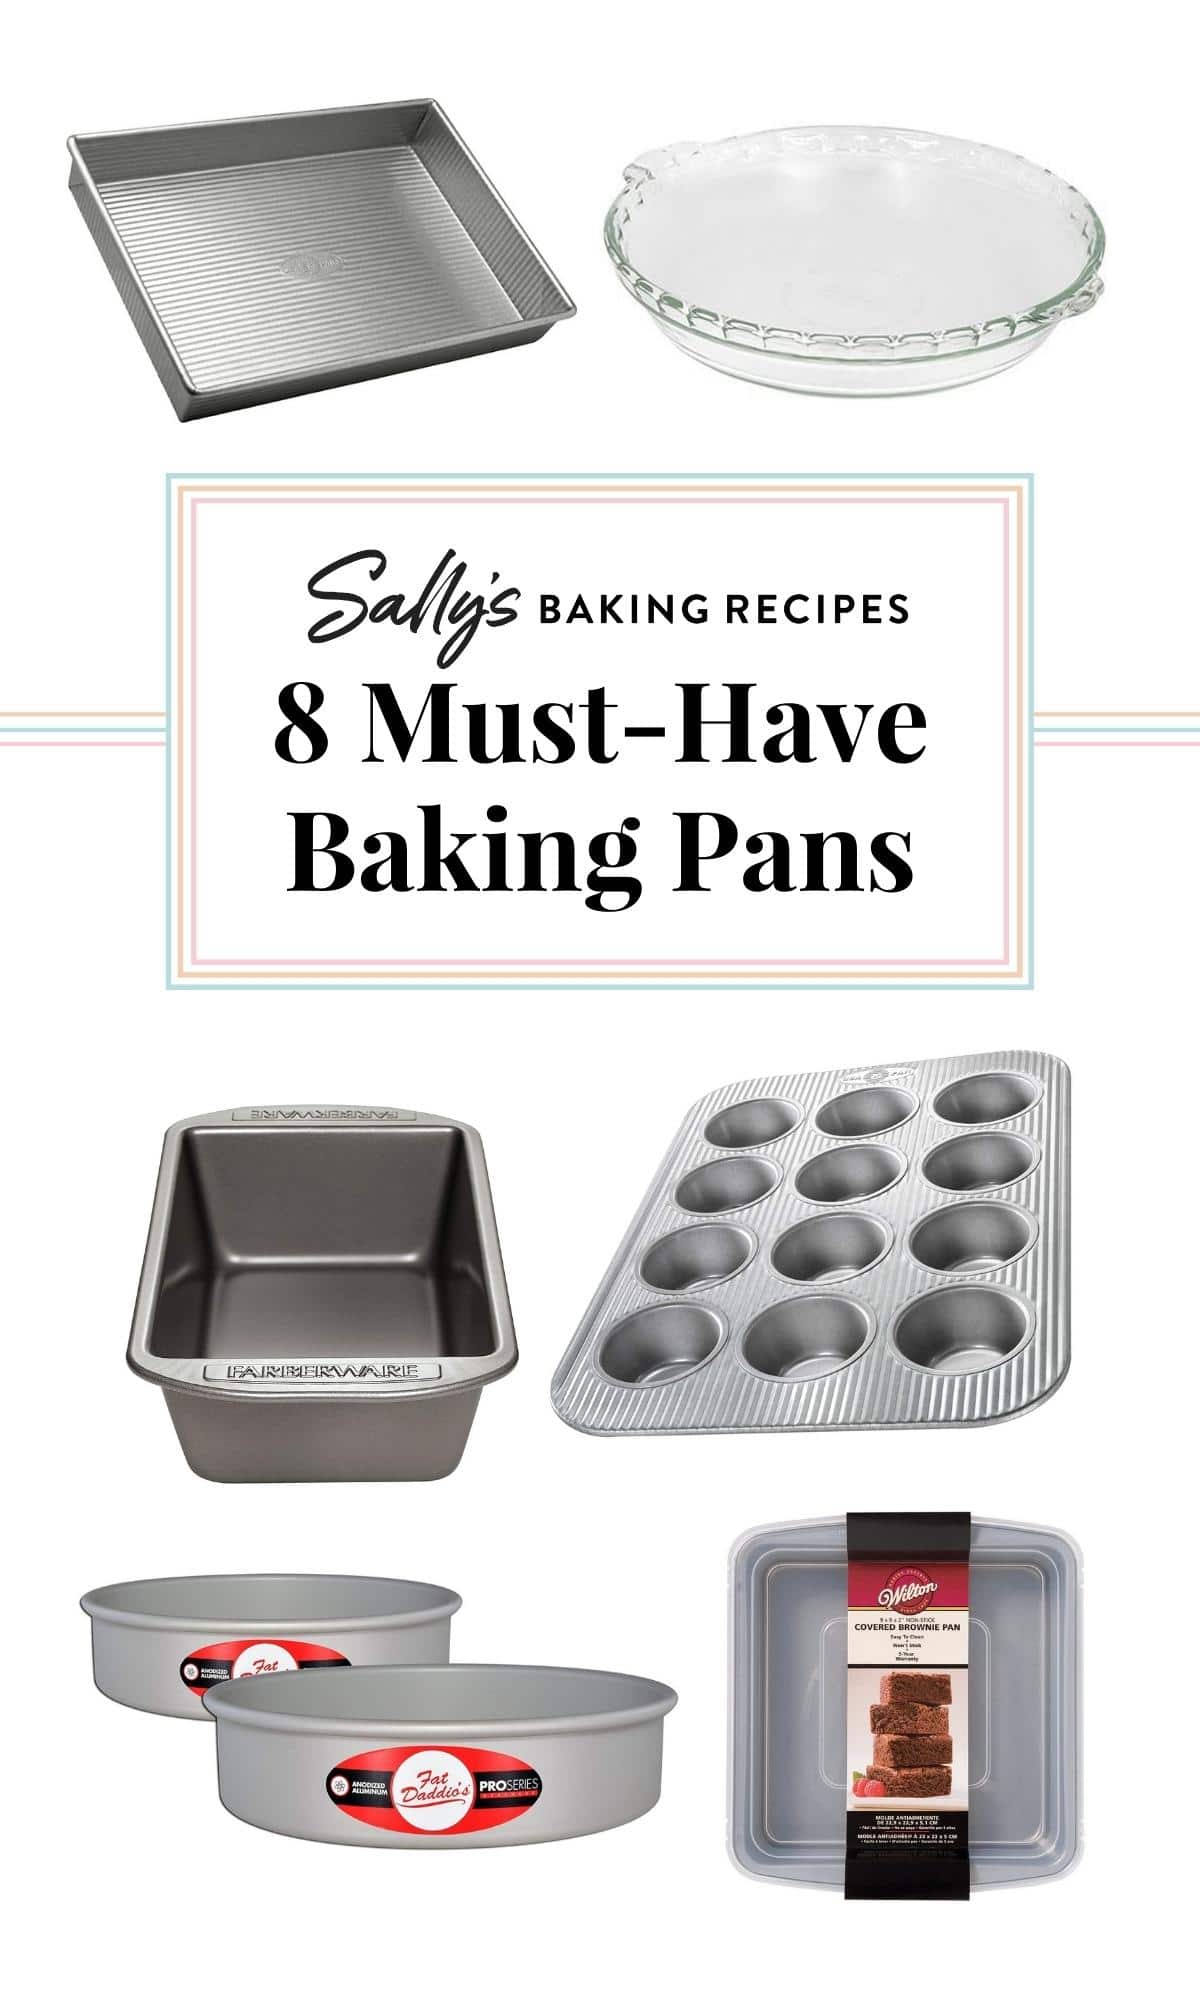 Mini Square Cake Pan 8 inch Cake Baking Pan Non-Stick Bakeware Cake Make Pan 1X 